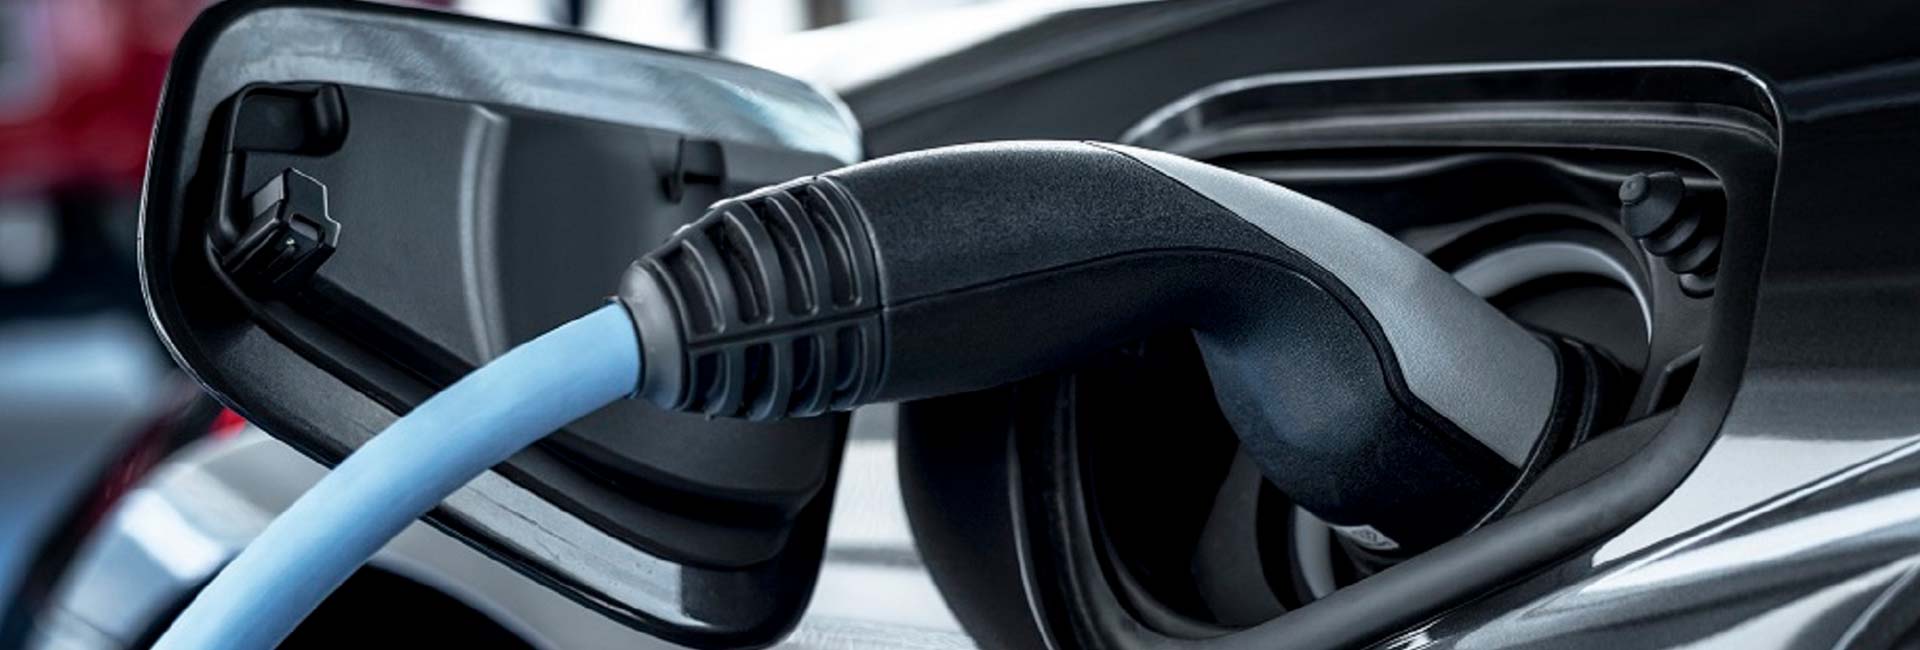 confermato-addio-vendita-auto-diesel-benzina-nel-2035